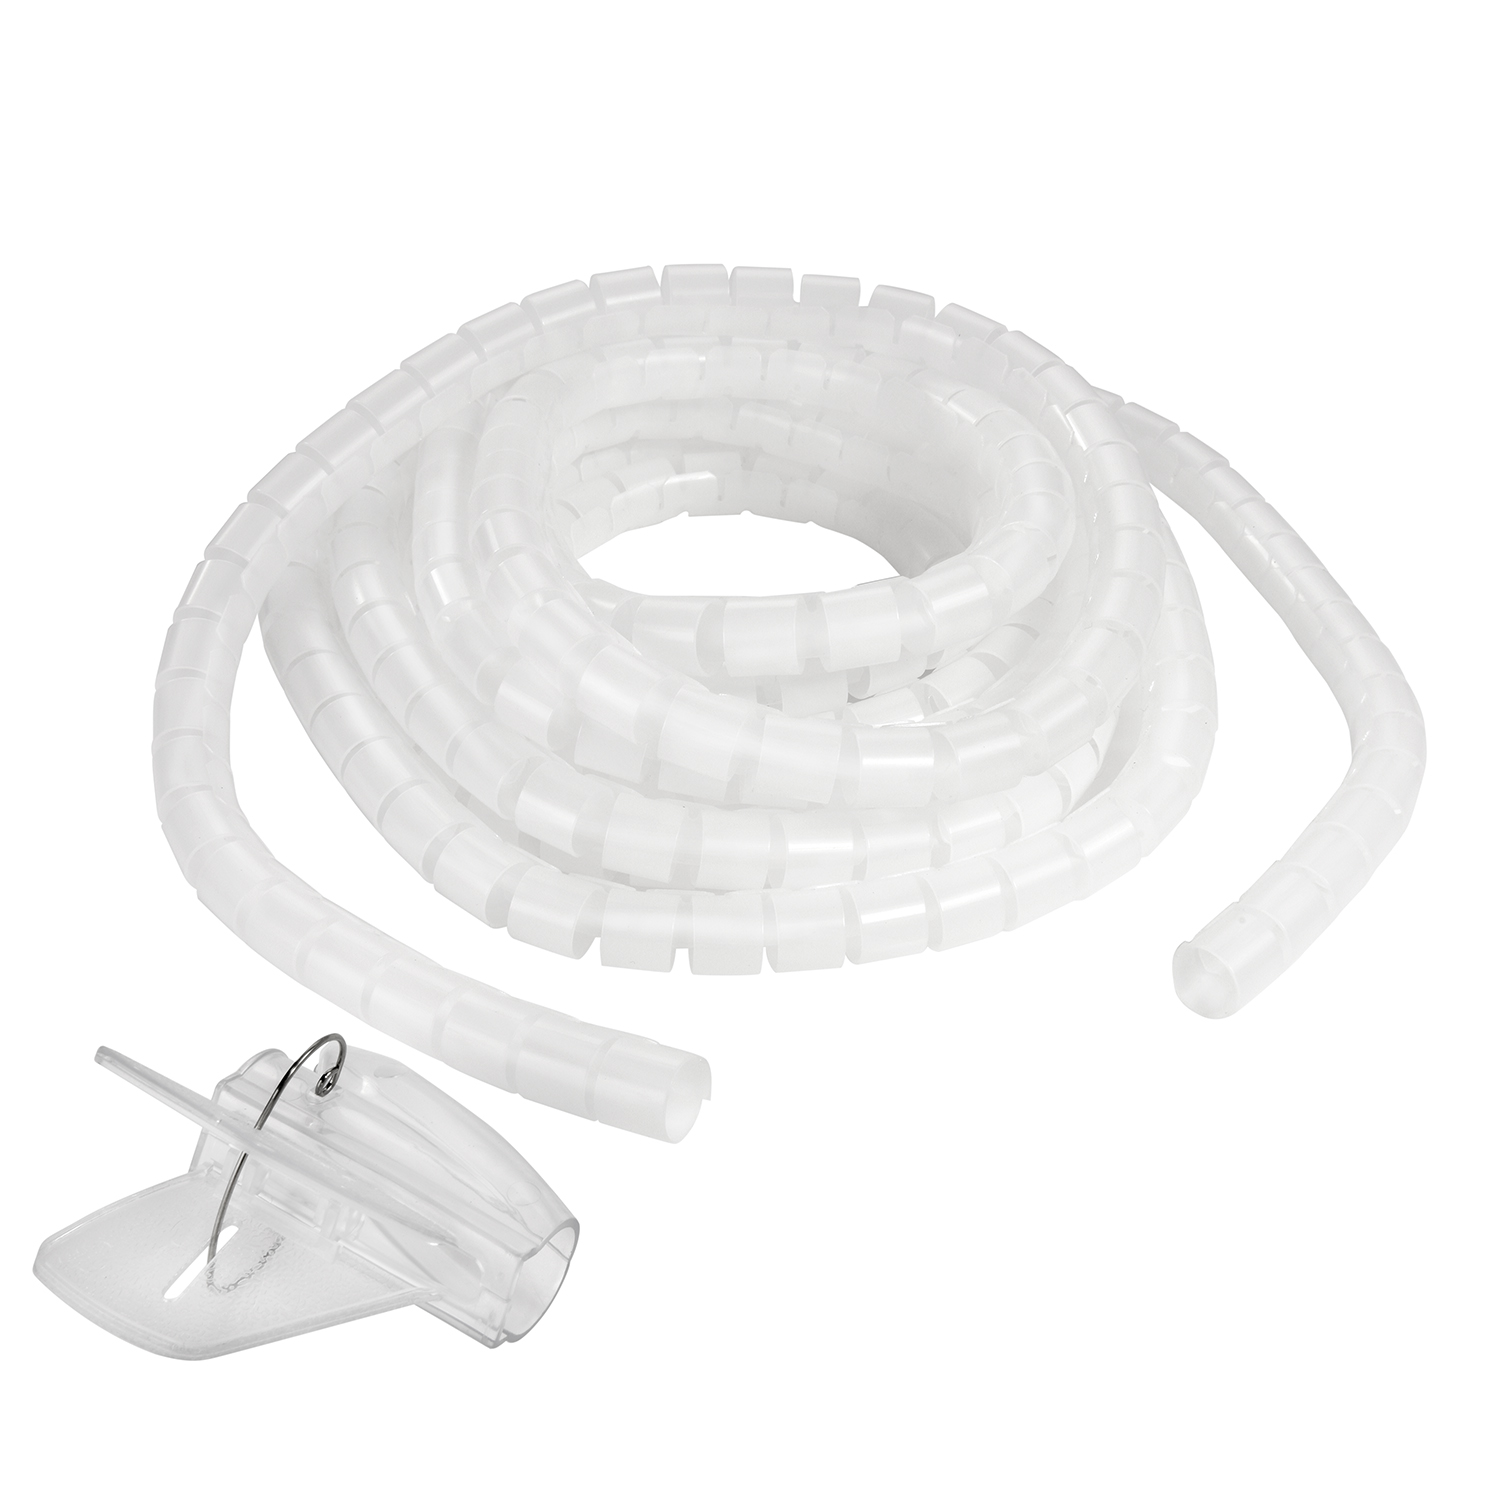 Einfädelhilfe, 1,5m Kabelschlauch, Transparent, mit Spiral-Kabelschlauch TPFNET Transparent Premium 20mm,